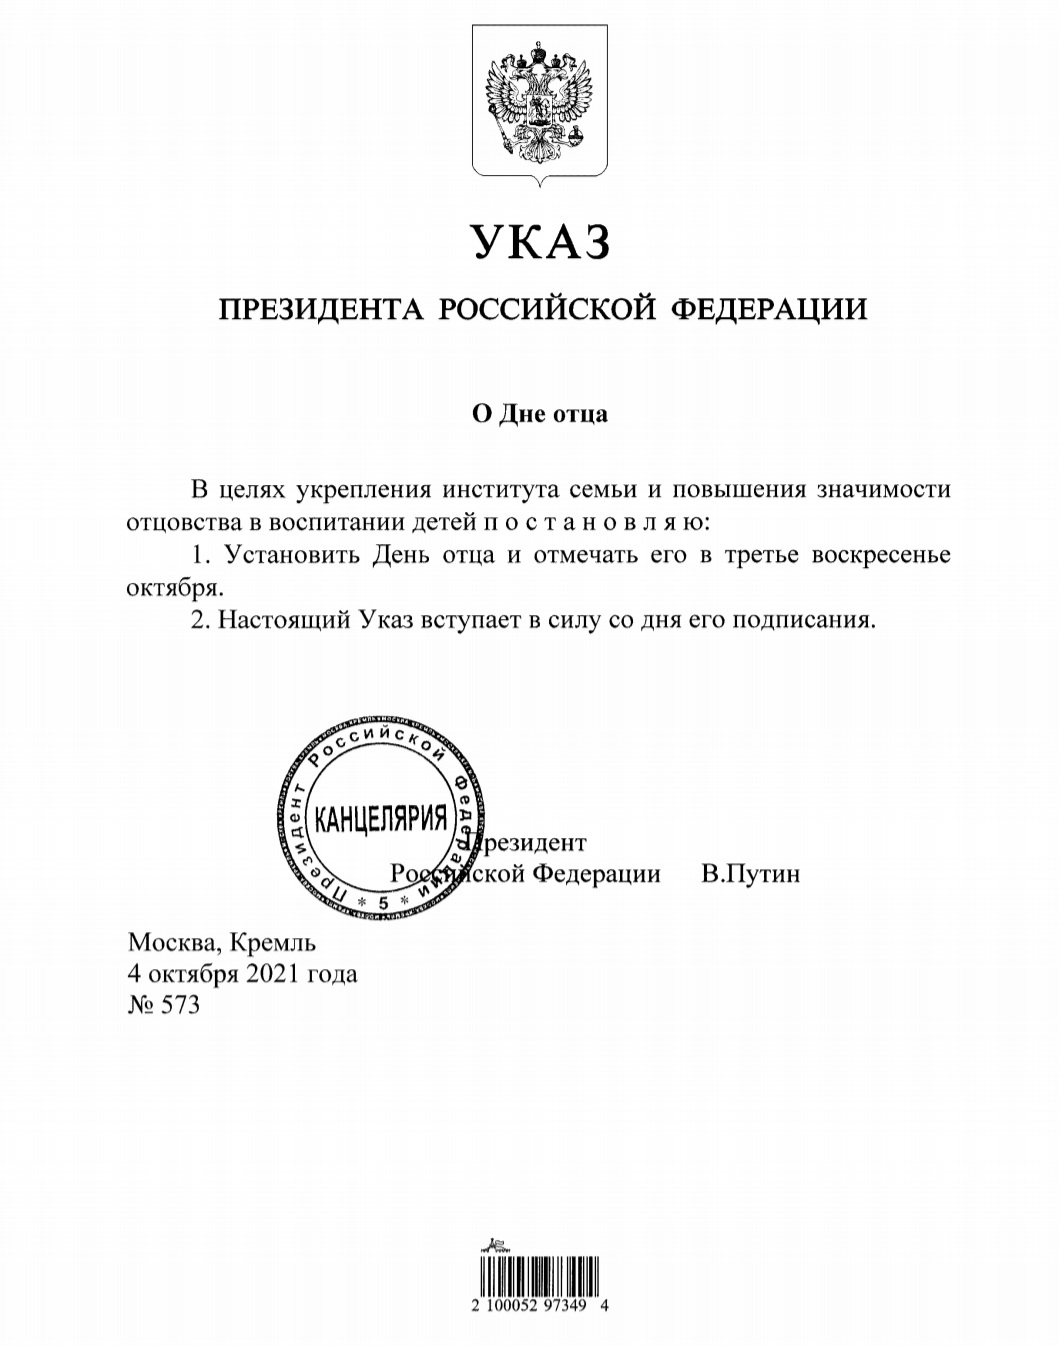 Фото скриншота Указа Путина № 573 от 04 октября 2021 года.